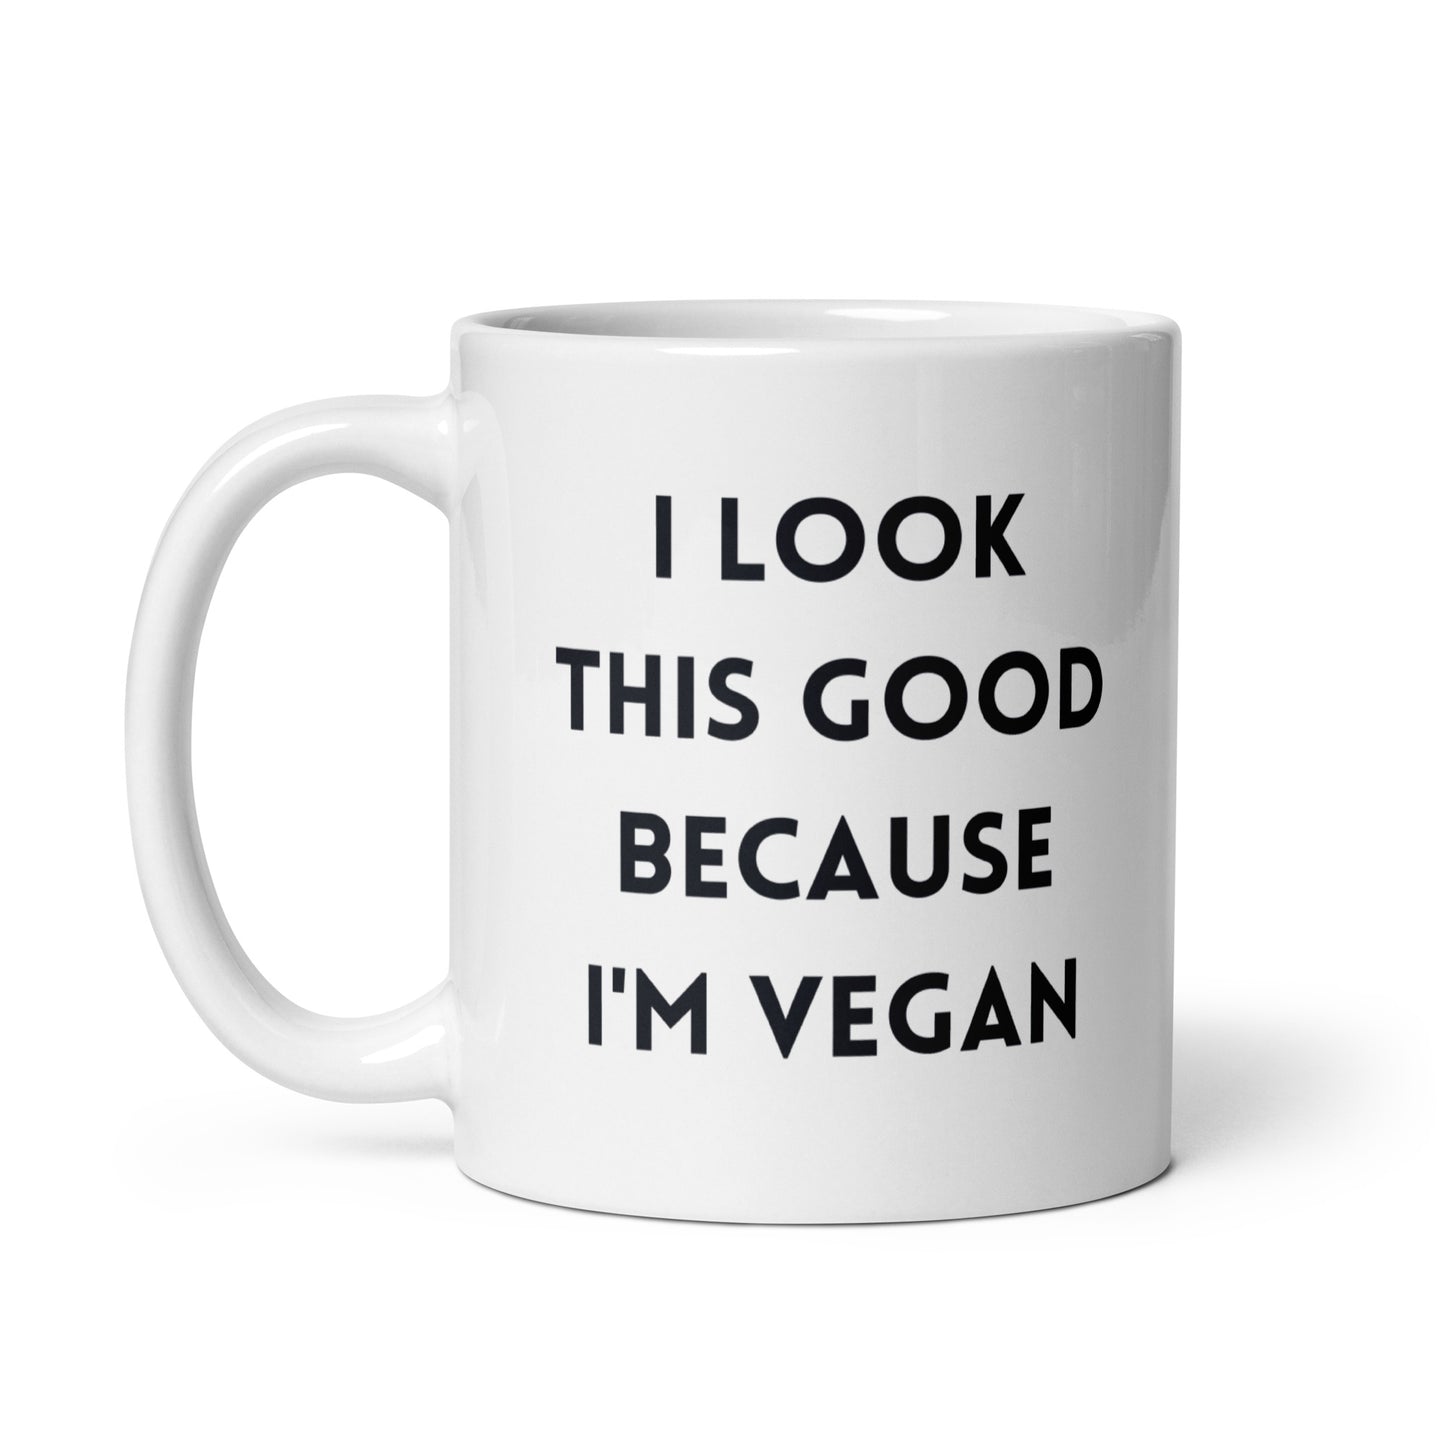 Because I'm Vegan - Vegan Coffee Mug